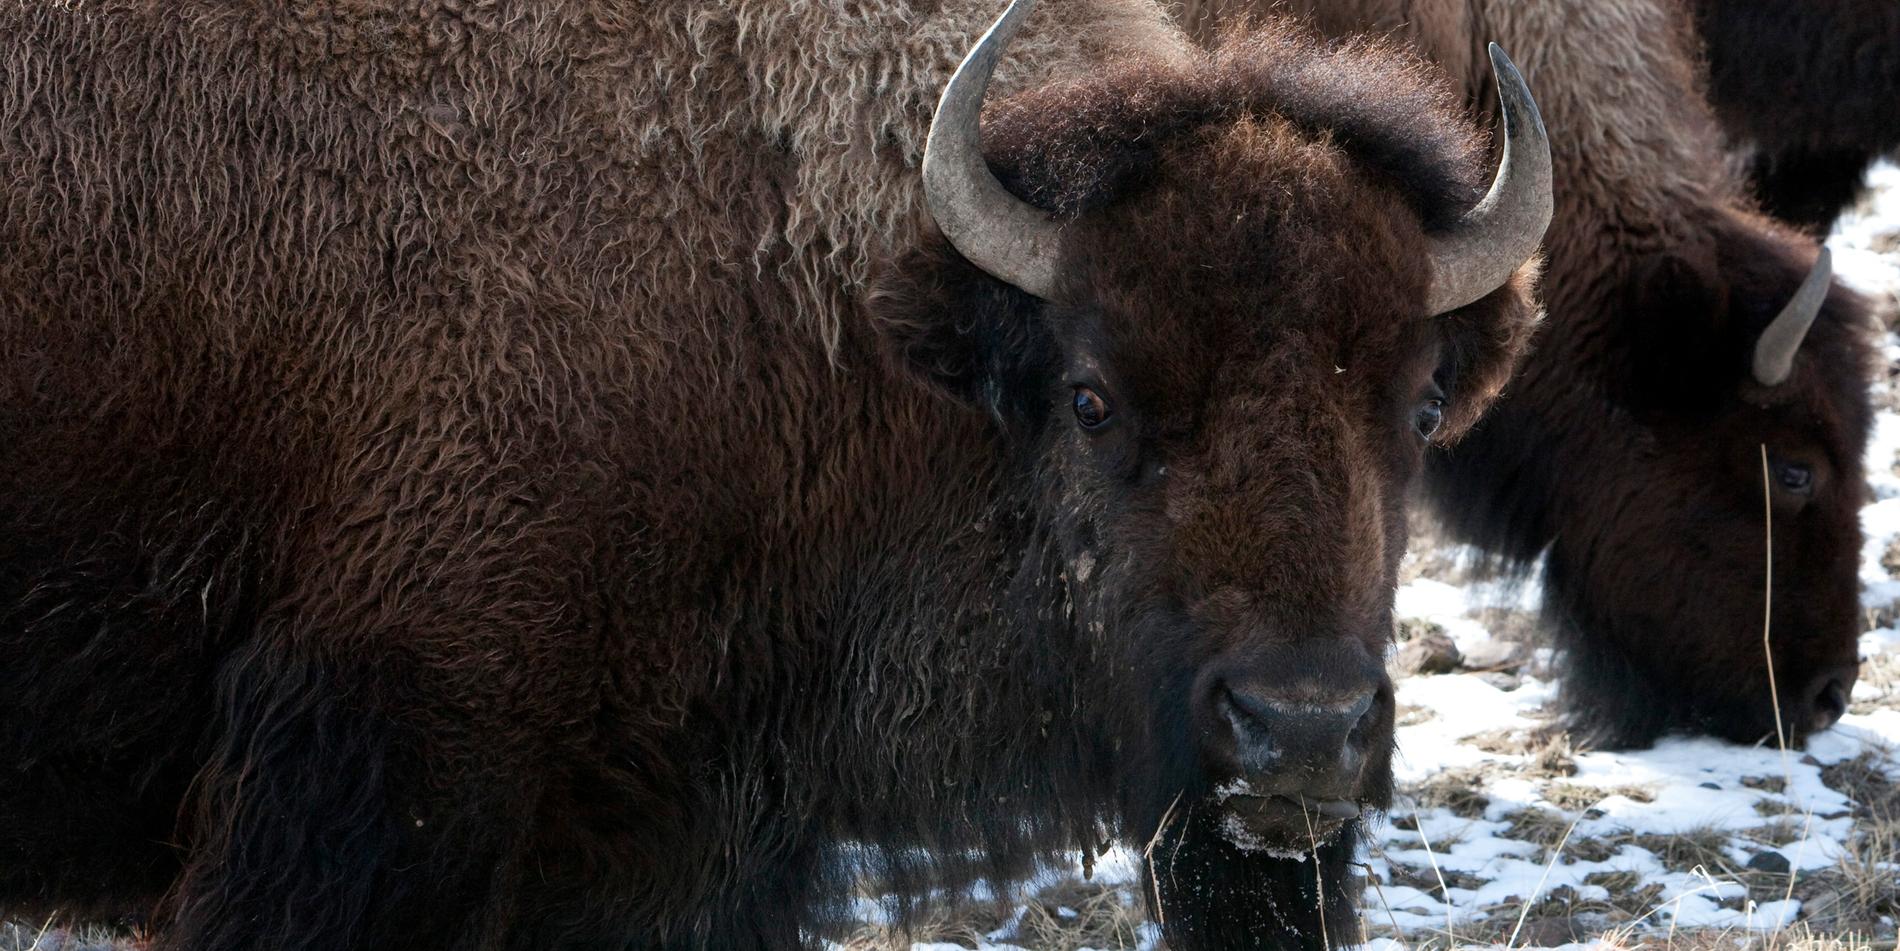 Västmanländske Thor flyttade till Moskva i november för att hjälpa till med reproduktionen. Men var han är idag vet ingen. Bilden föreställer en annan bisonoxe. 